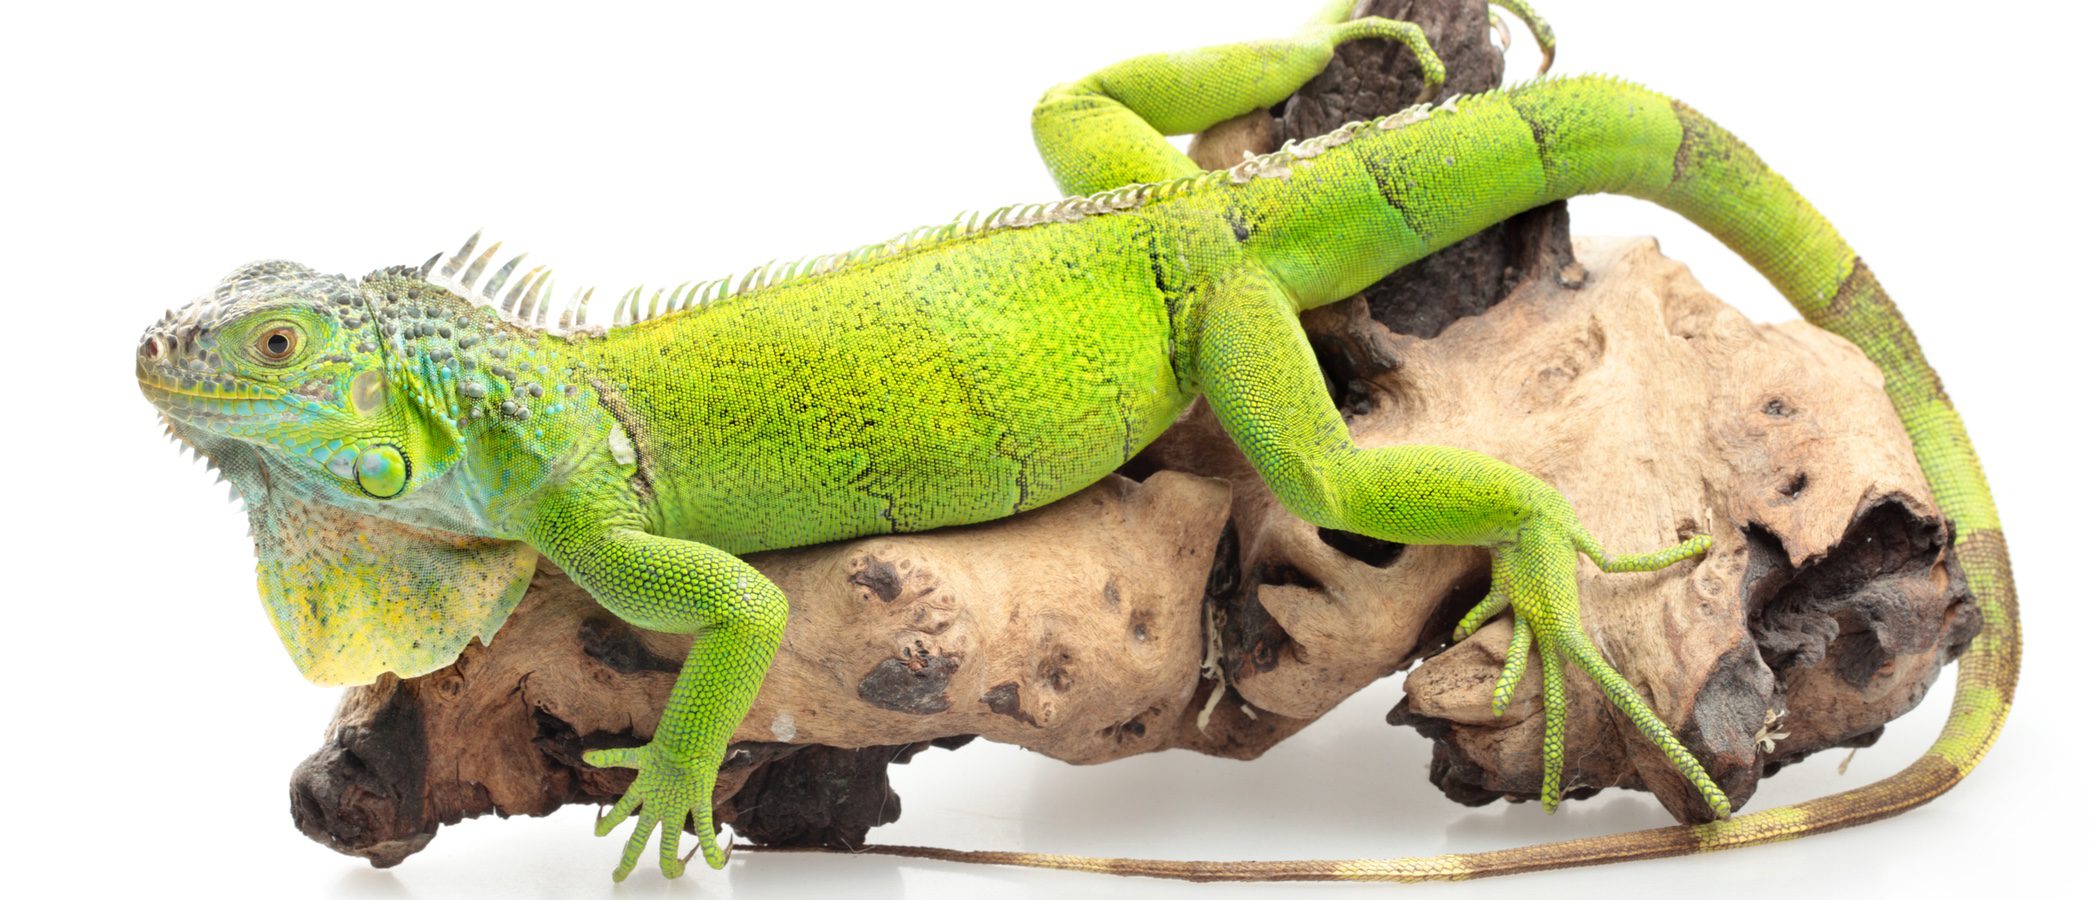 Iguana verde: todo lo que necesitas saber sobre este reptil